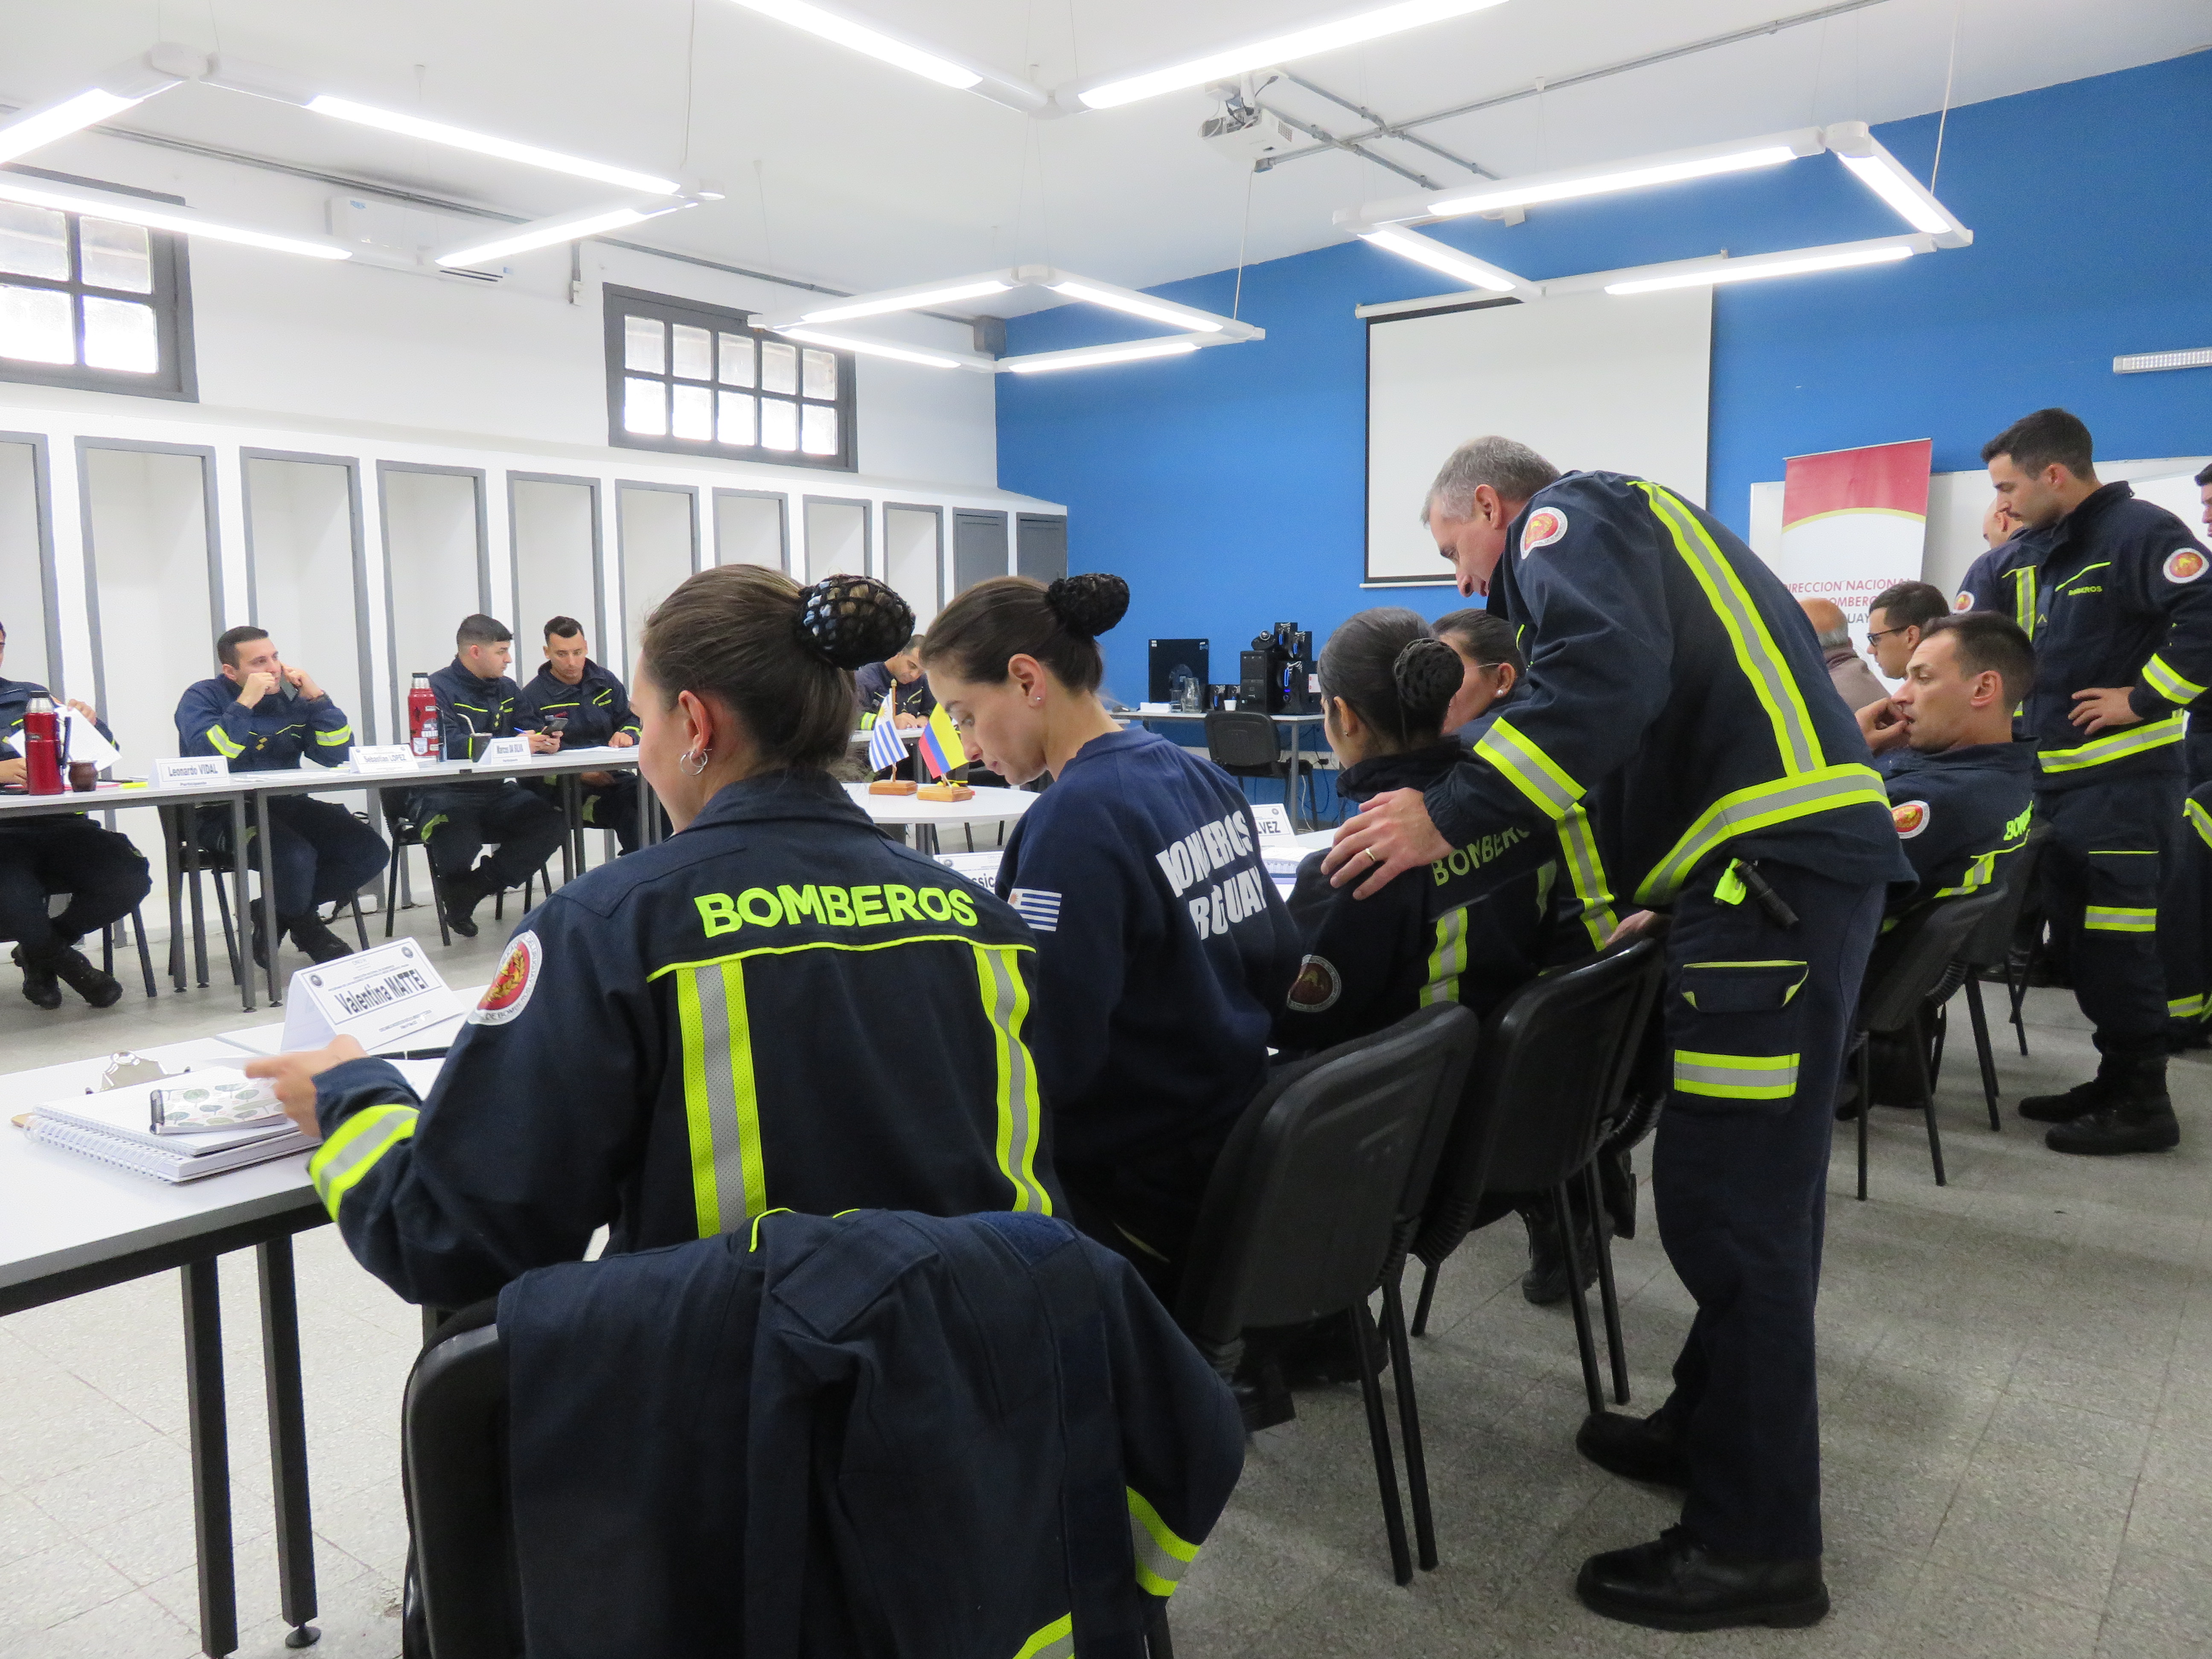 IMG_20230511_3754.jpg - El pasado jueves 11 de mayo culminó la &#034;Capacitación para bomberos sobre manejo de incidentes relacionados con la movilidad eléctrica&#034; en donde se capacitaron a 25 bomberos en la Base Aérea de Santa Bernardina del departamento de Durazno. Esta capacitación es la continuación del primer curso regional que organizó la plataforma MOVE del Programa de la Naciones Unidas para el Medio Ambiente a finales de 2022 en Paraguay, donde participaron y se formaron dos bomberos instructores de Uruguay.